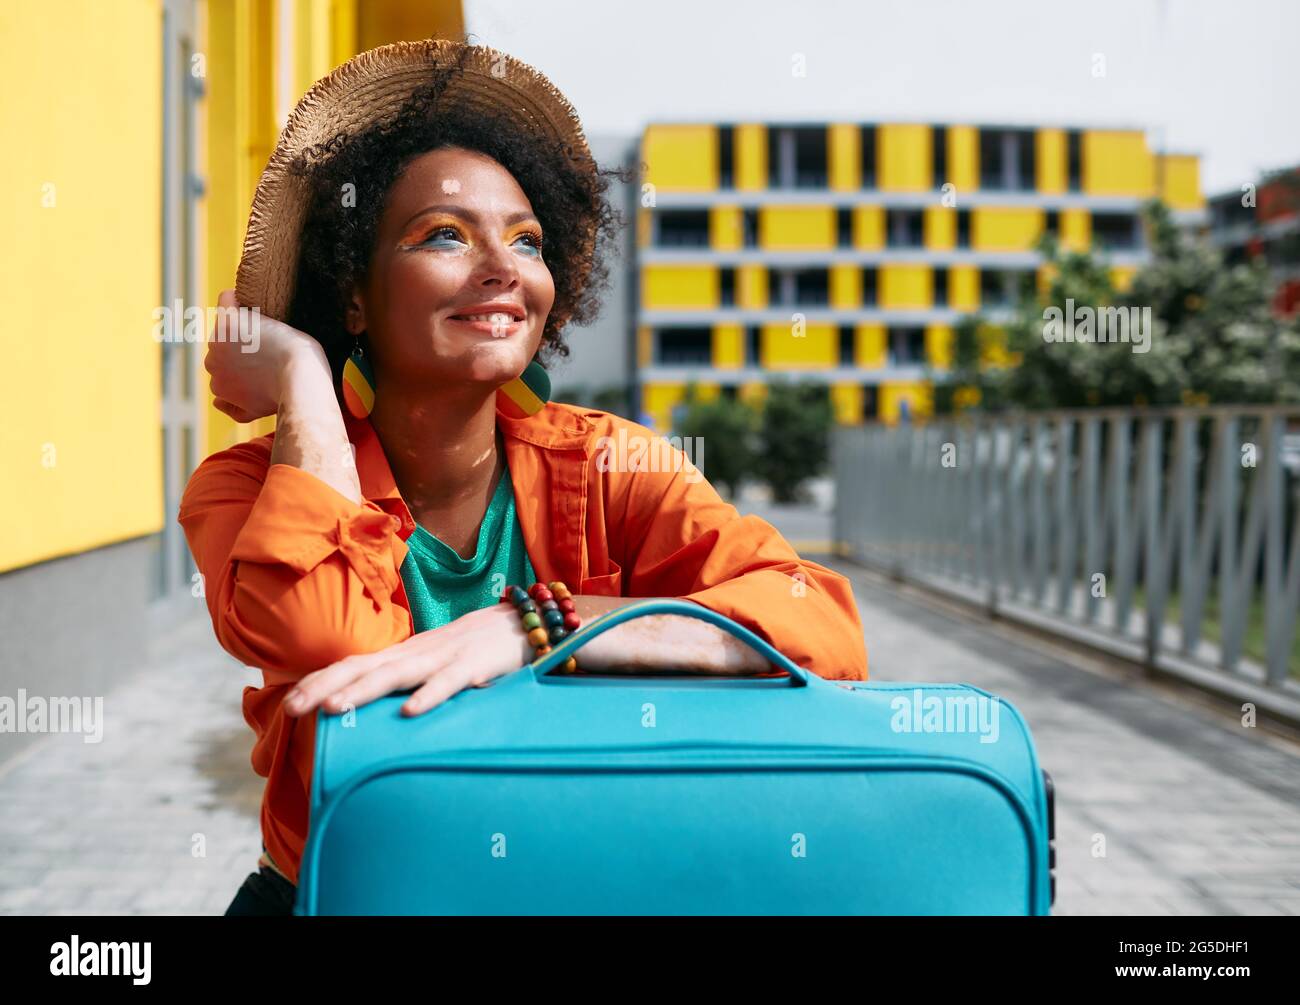 Lustige multiethnische Frau mit hellem Make-up und farbigen Kleidern mit einem Koffer reist durch schöne urbane Orte Stockfoto